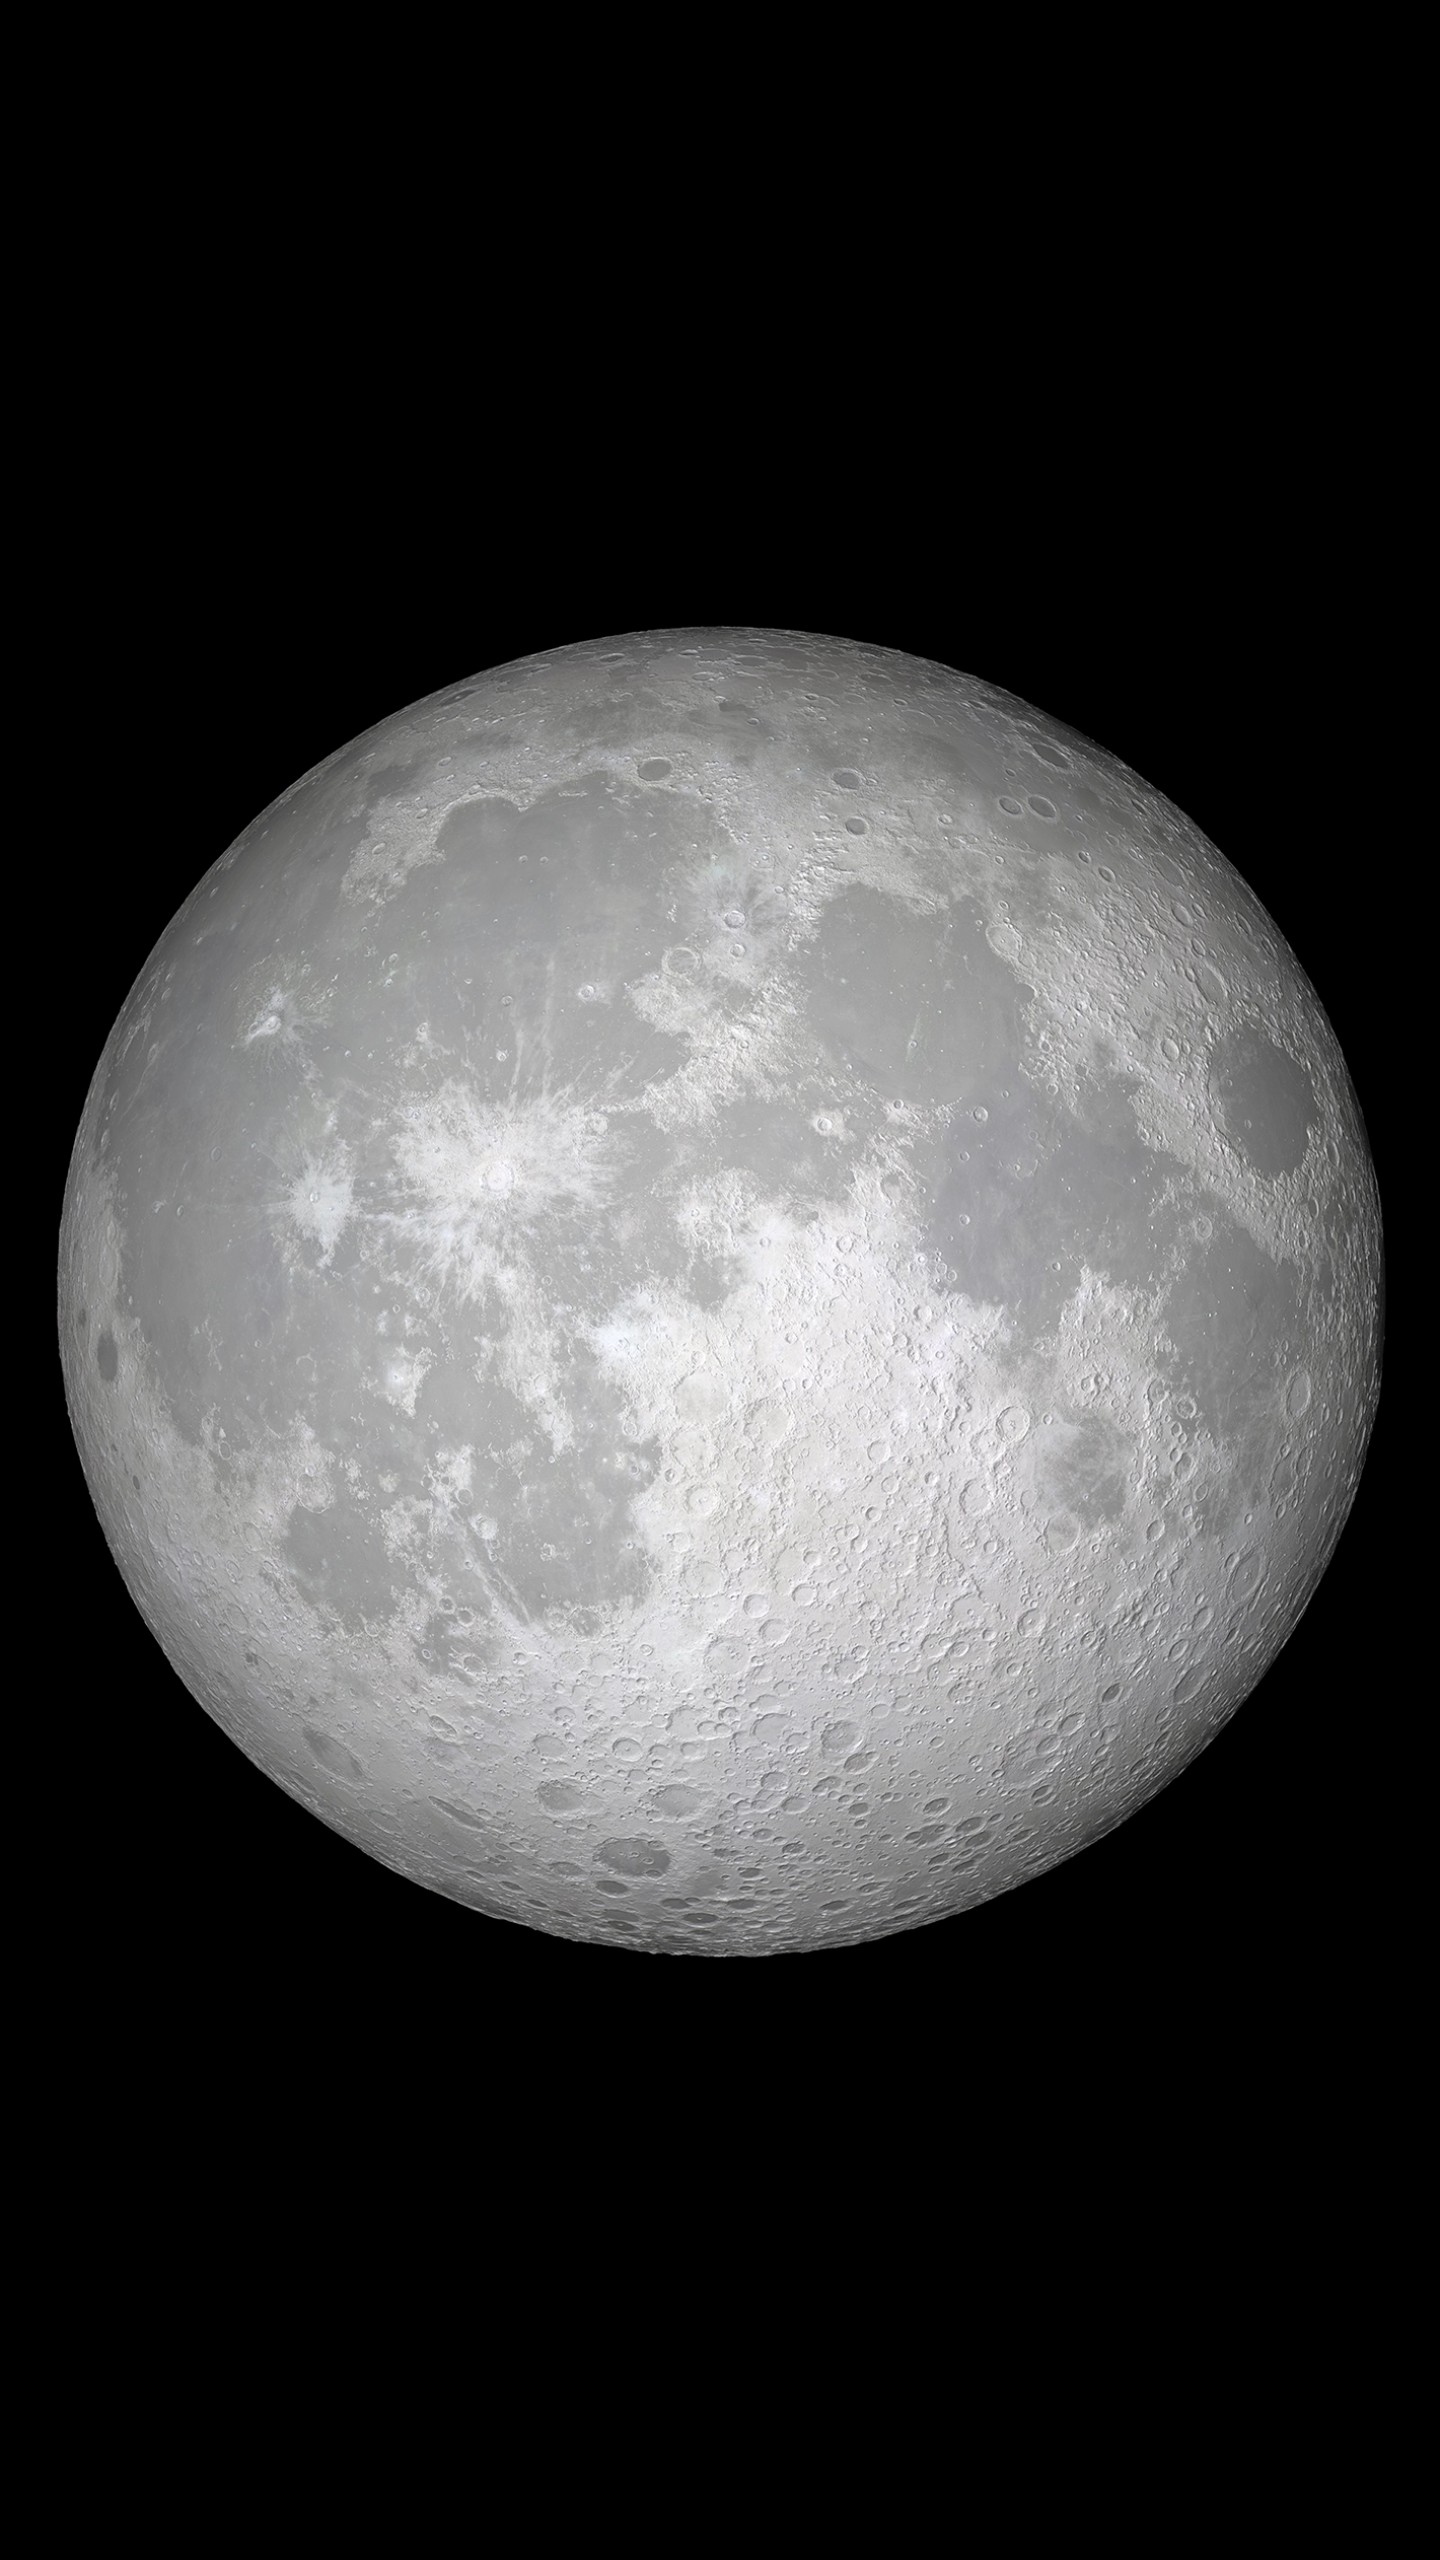 carta da parati 2017,luna,fotografia,oggetto astronomico,bianco e nero,sfera